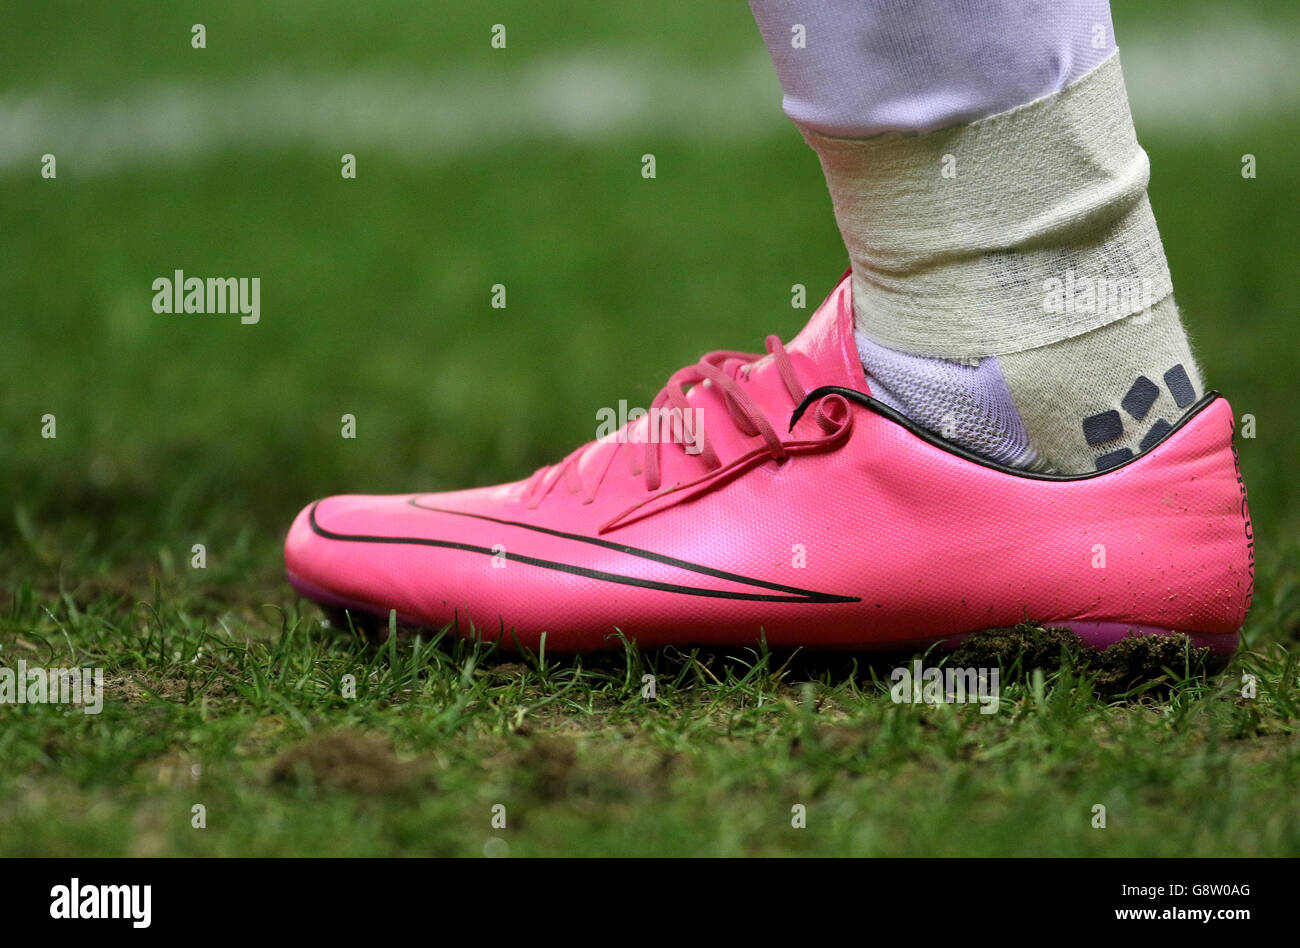 Nike stadium immagini e fotografie stock ad alta risoluzione - Alamy